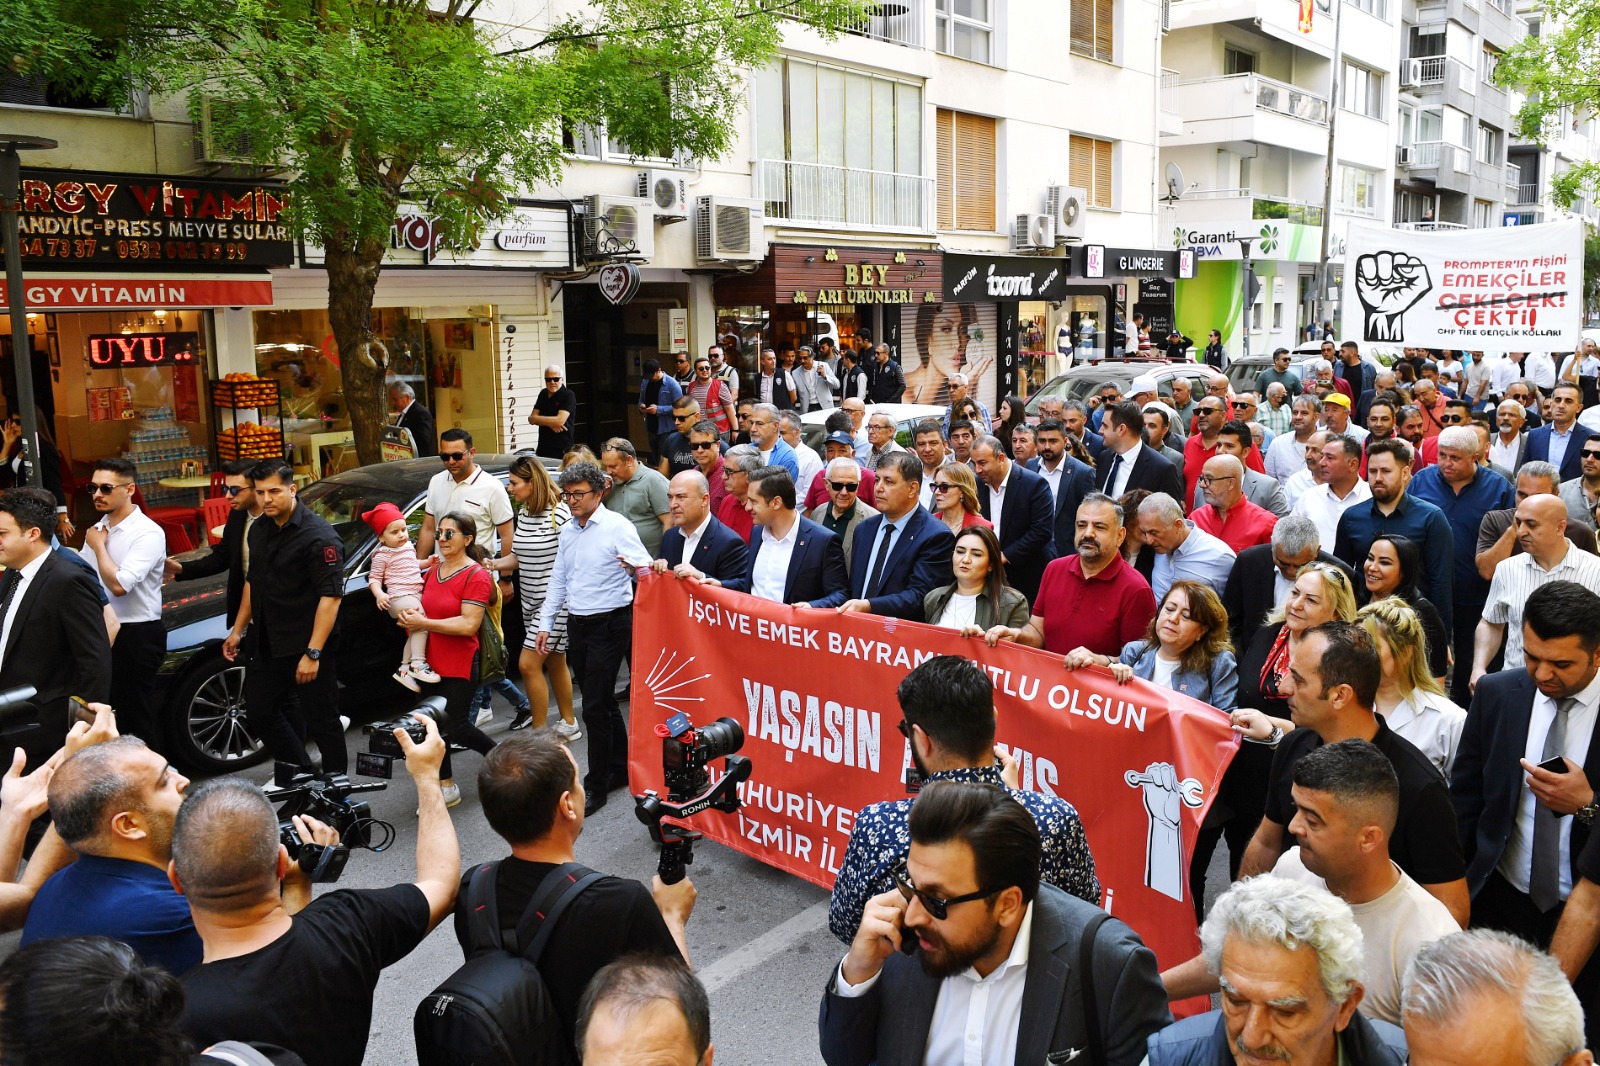 İzmir’de 1 Mayıs, Gündoğdu Meydanı'nda kutlandı